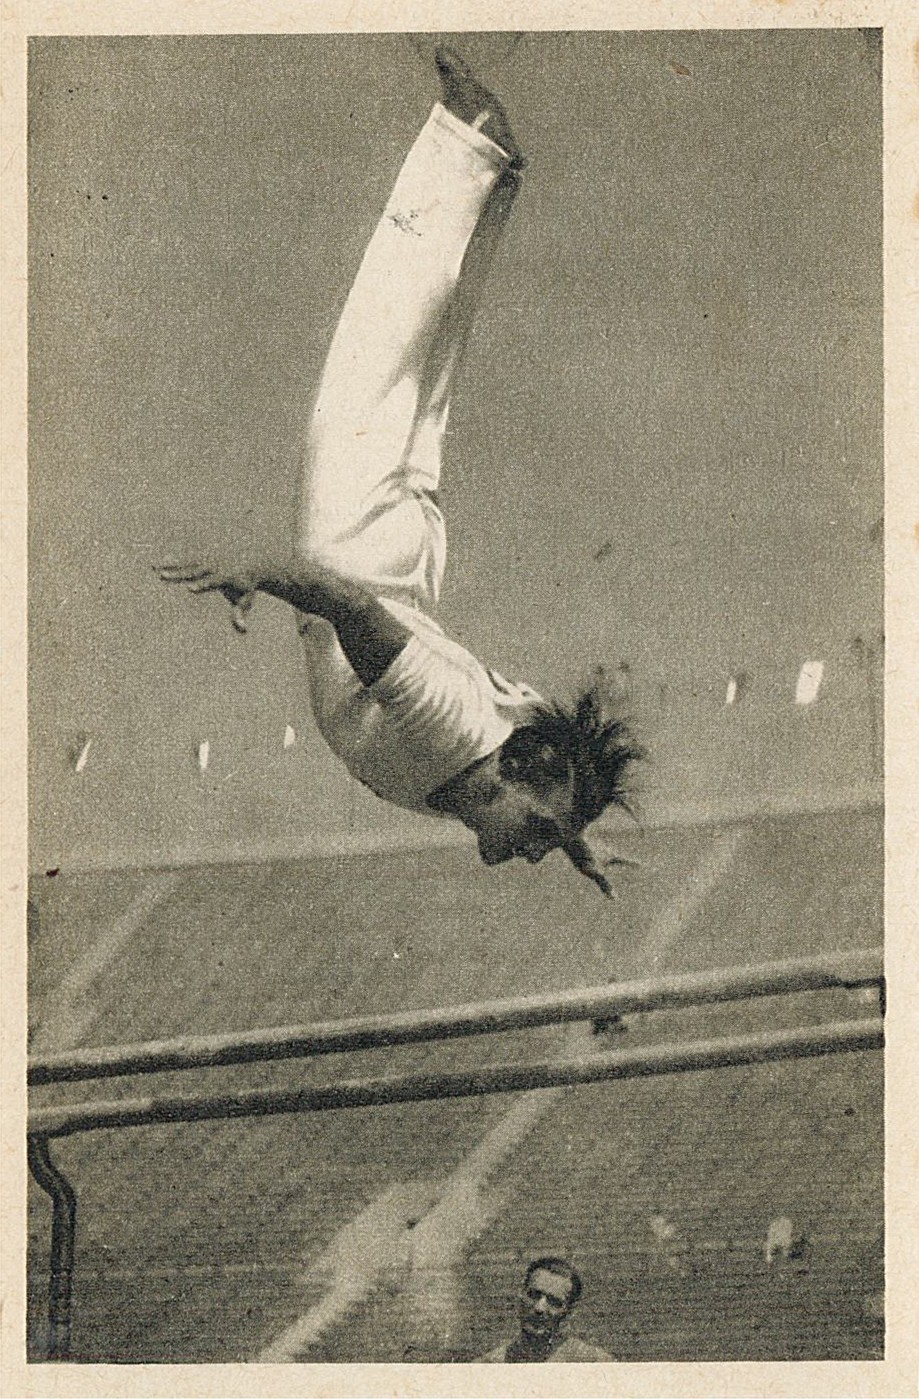 Sammelbilder "Olympia 1932" - Bild-Nr.: 182 (Gruppe 19) (Museum Wolmirstedt RR-F)